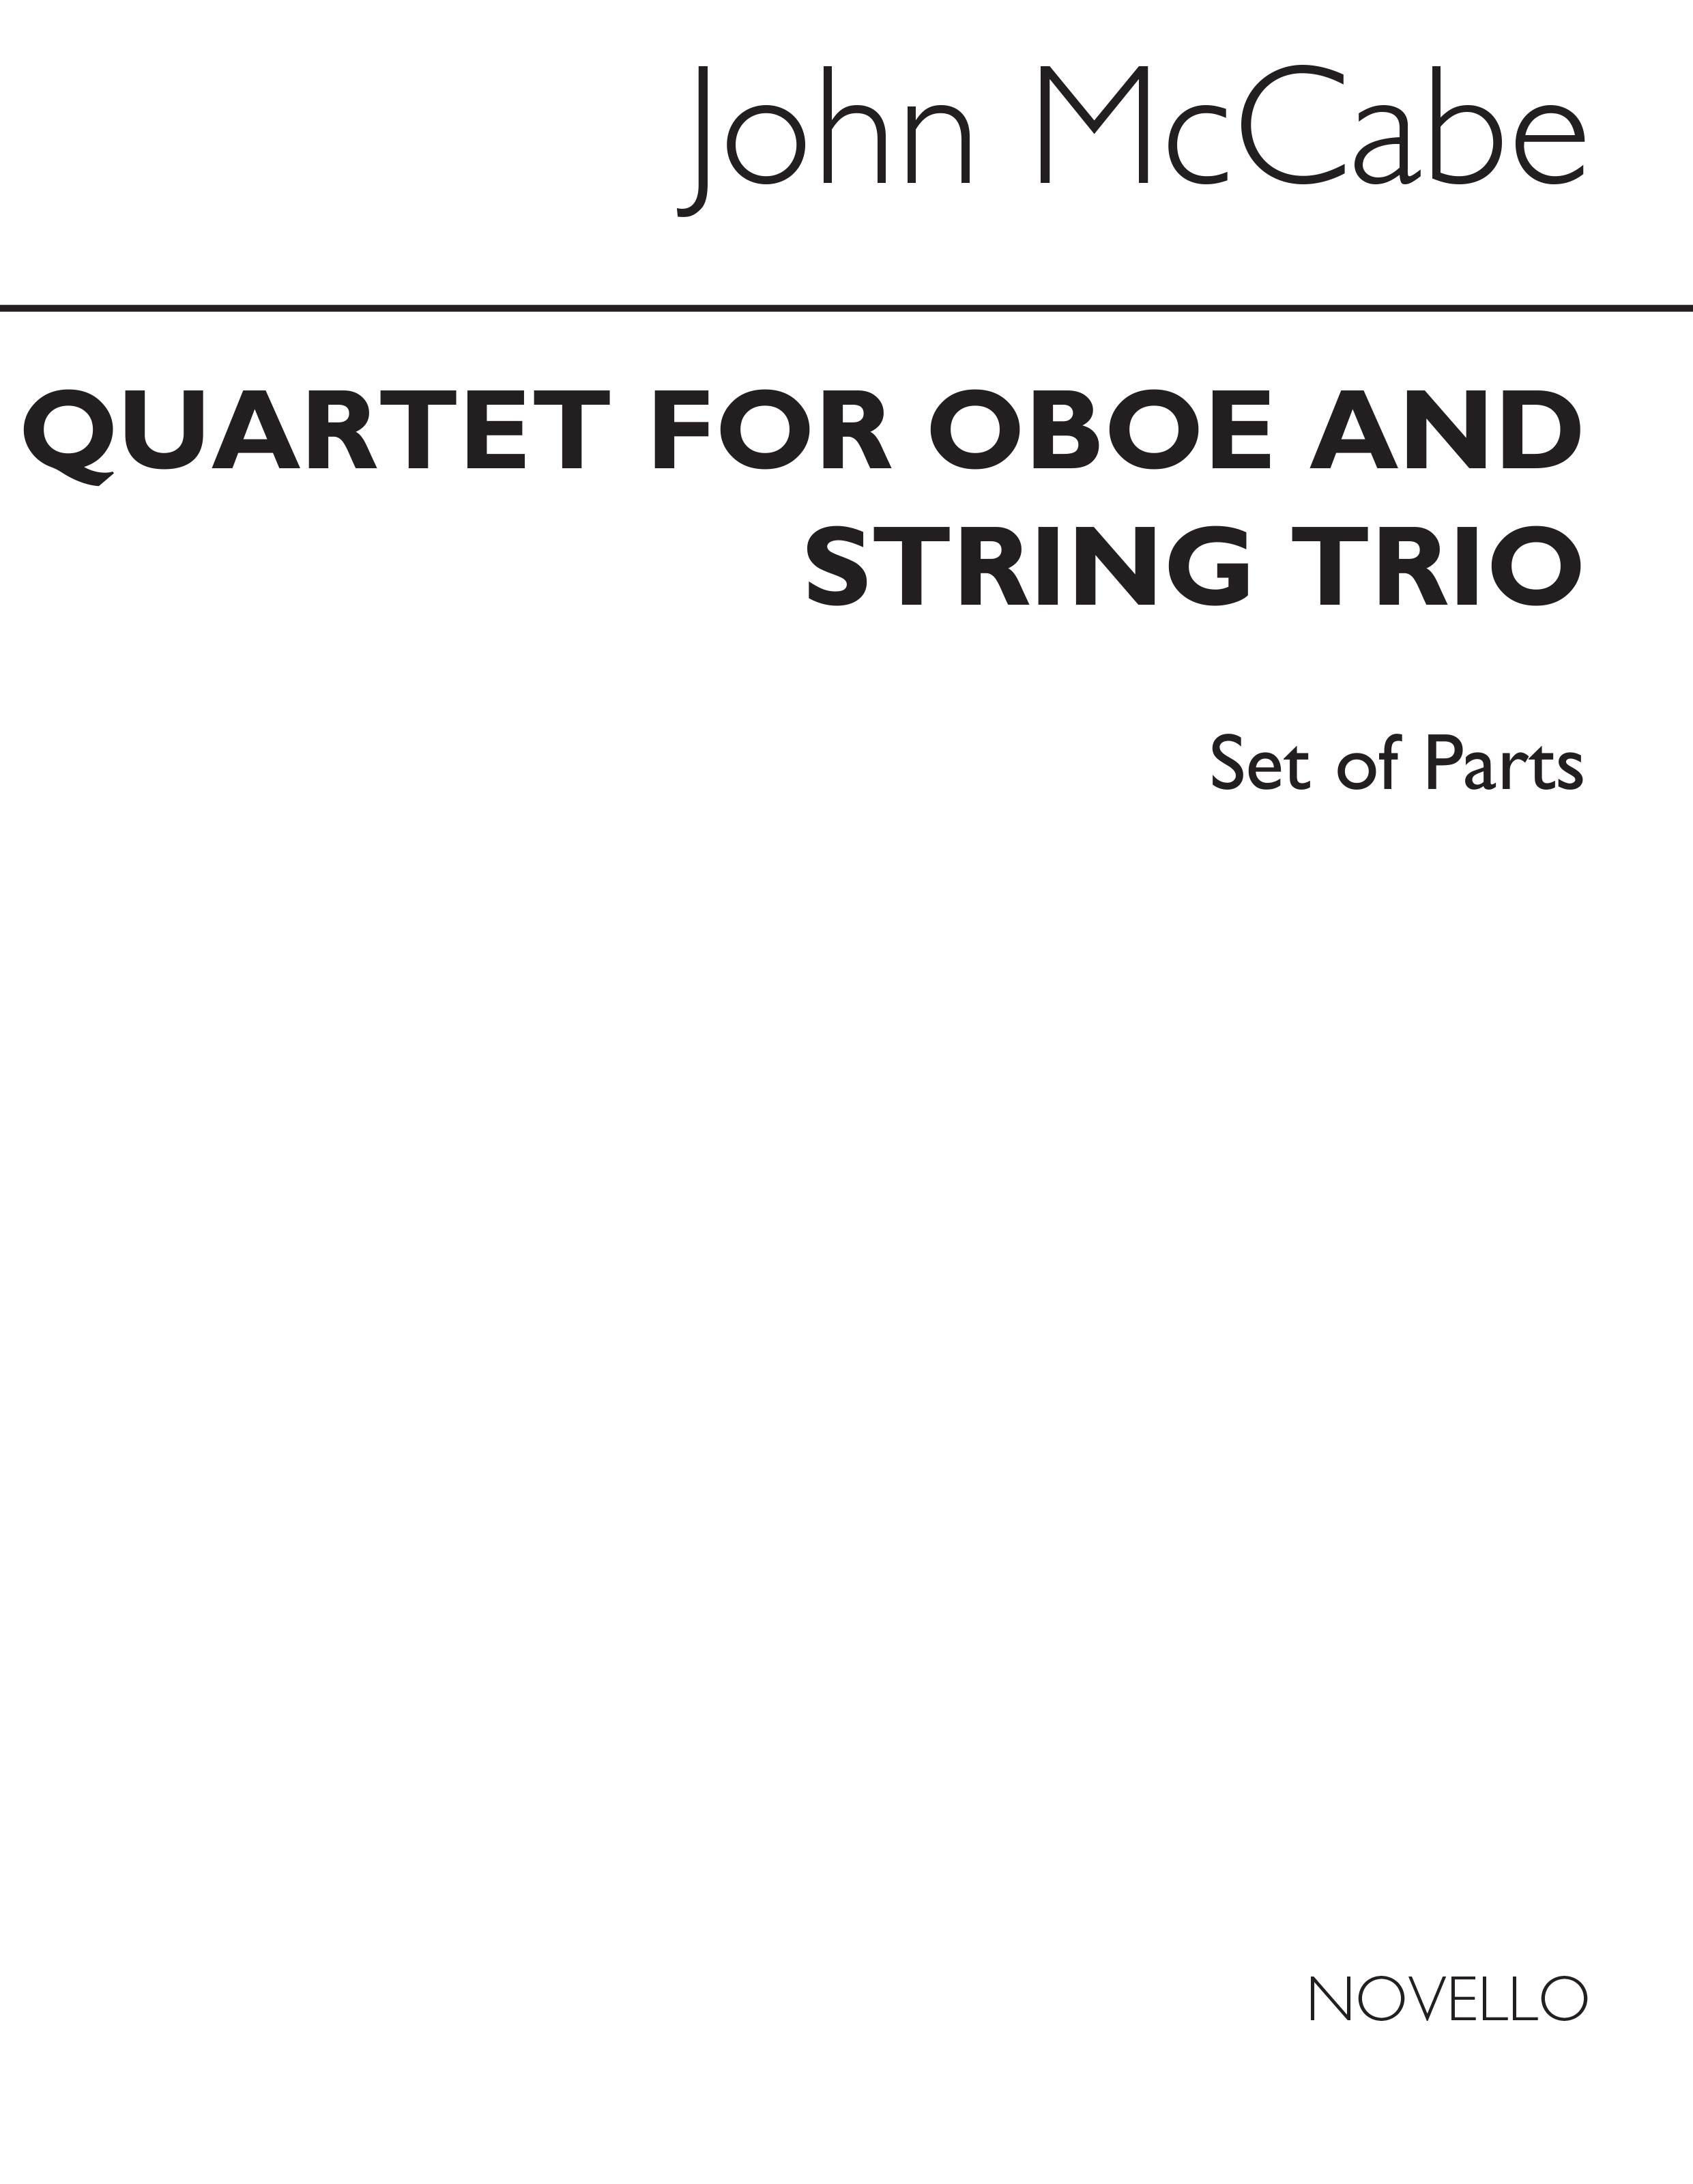 McCabe: Quartet For Oboe And String Trio (Parts)